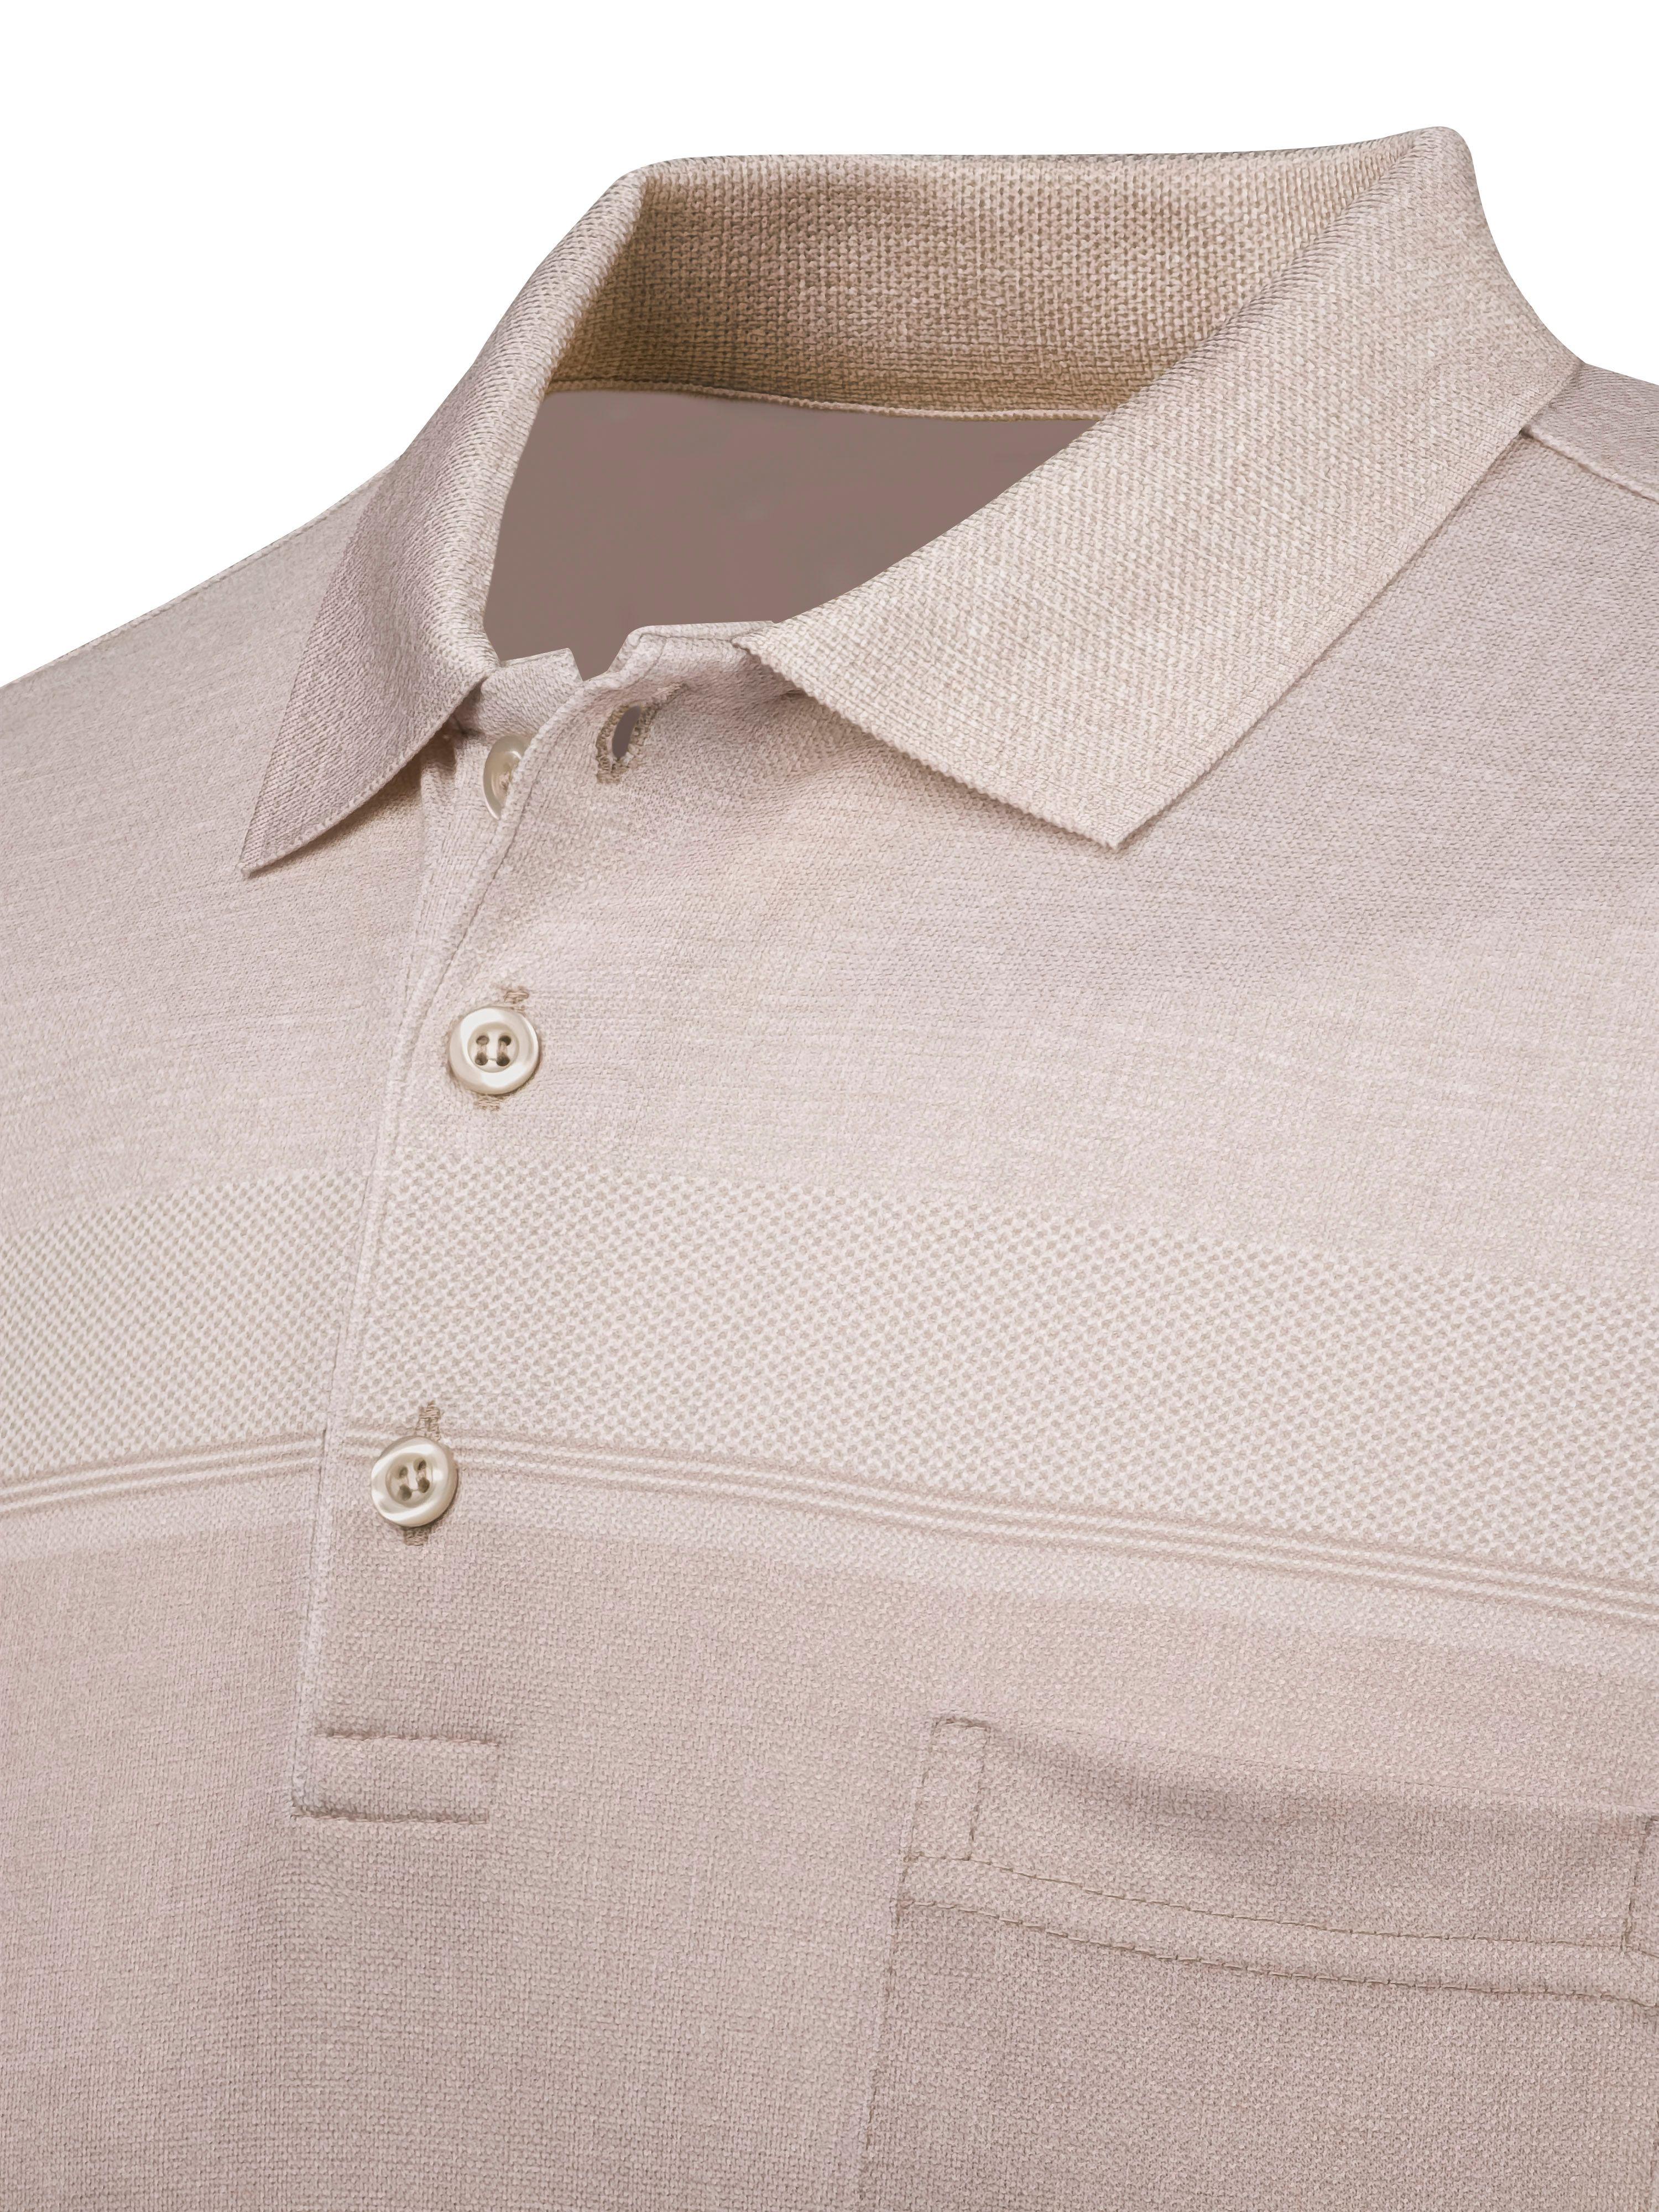 Erkek Polo Yaka Düğmeli Cepli Tişört Regular Kalıp - VİZON